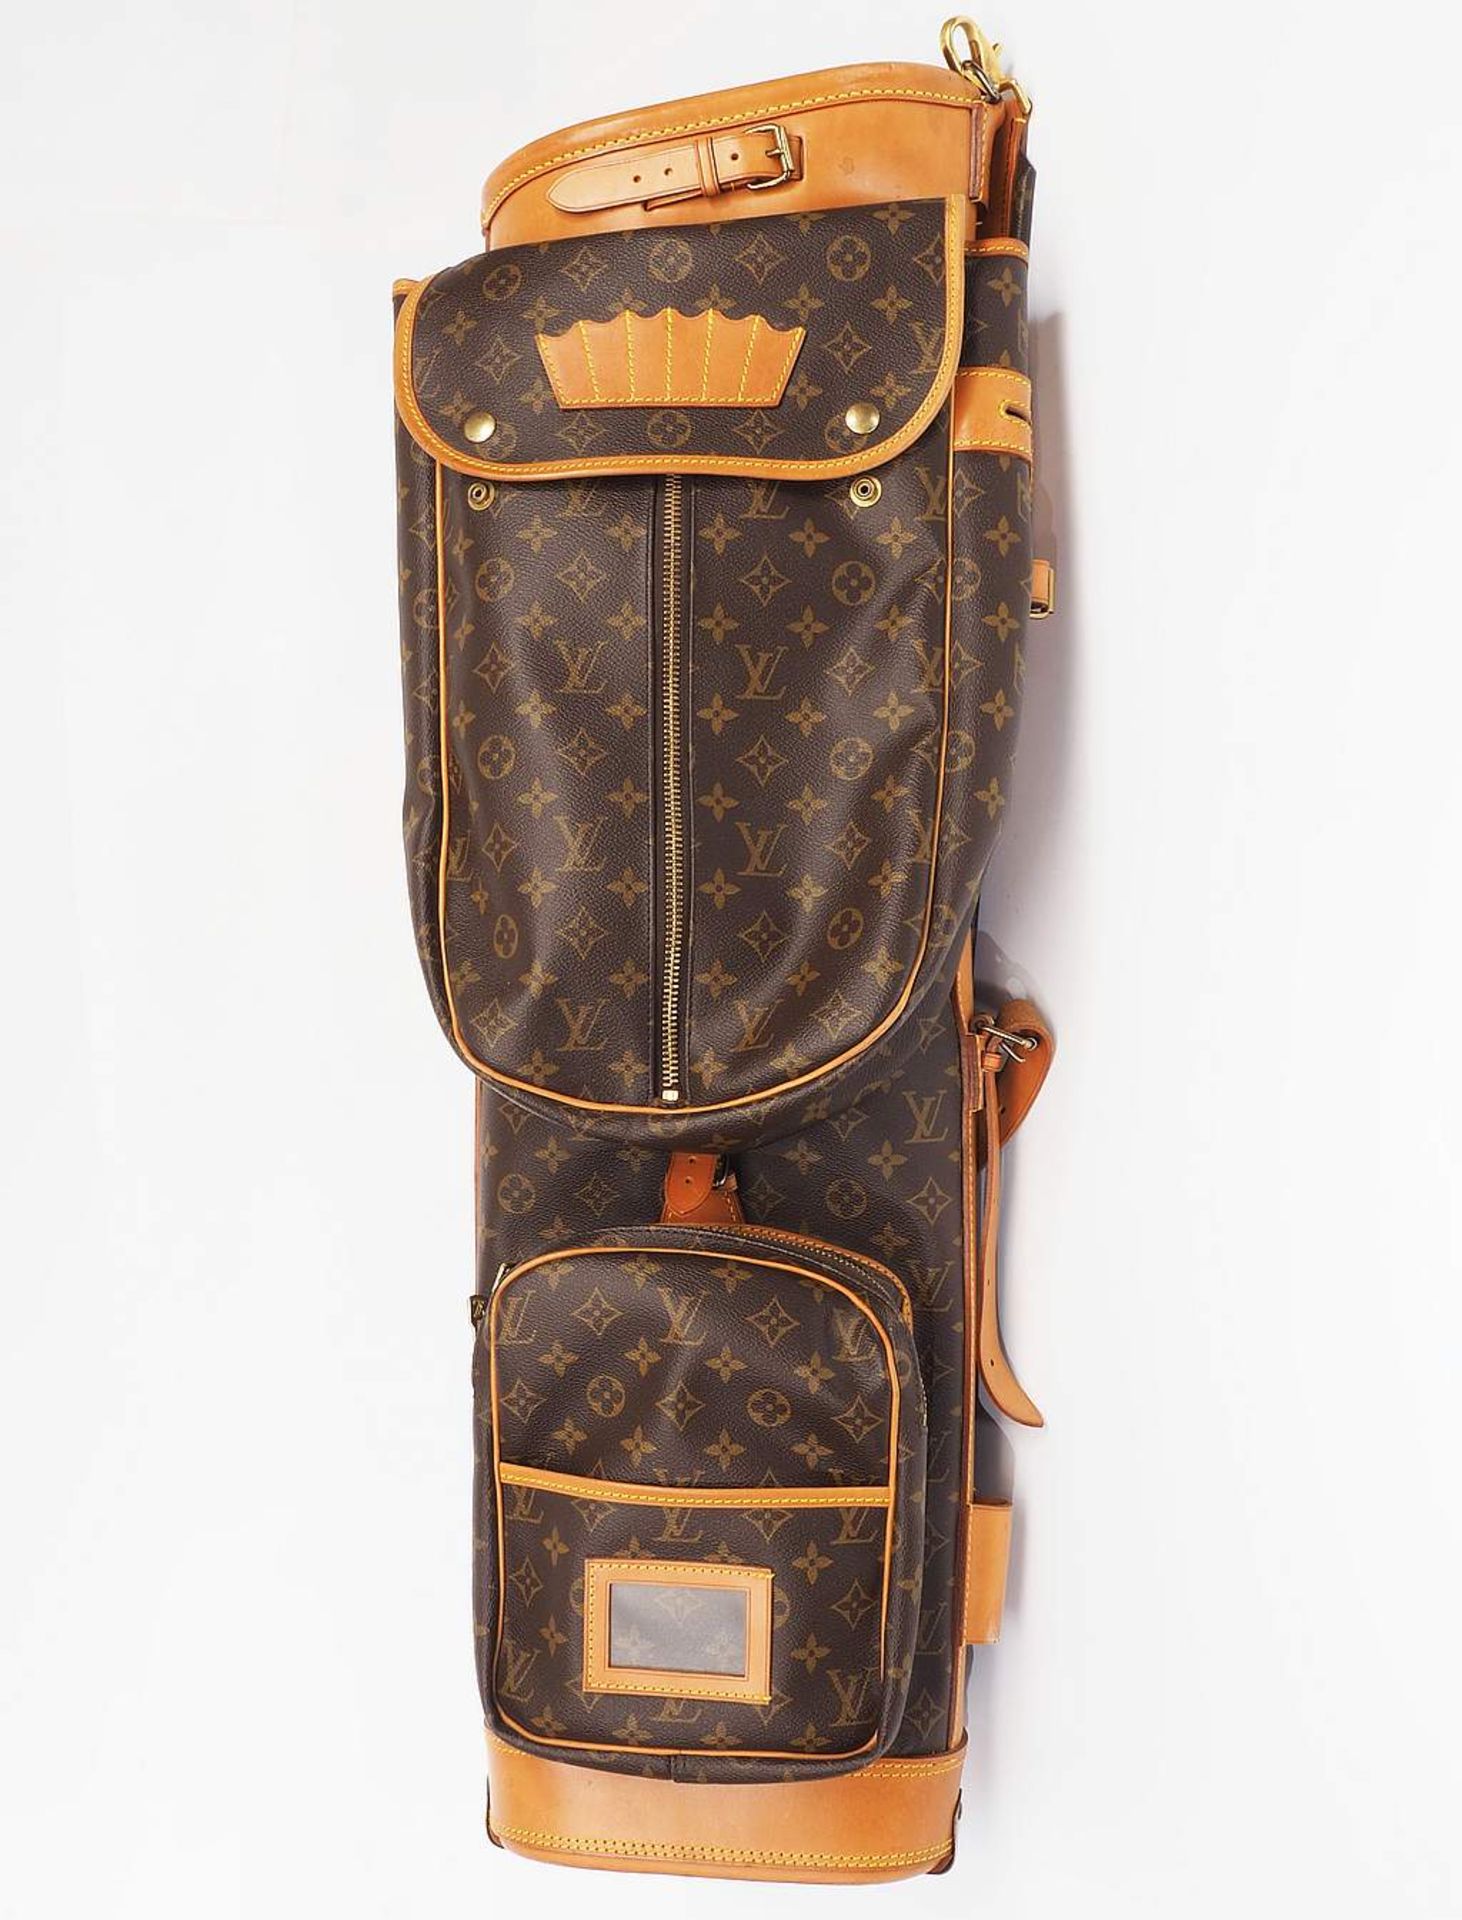 LOUIS VUITTON Vintage Gold-Bag / Tasche, 1980er Jahre, mit klassischem Louis Vuitton Monogramm b - Bild 2 aus 6